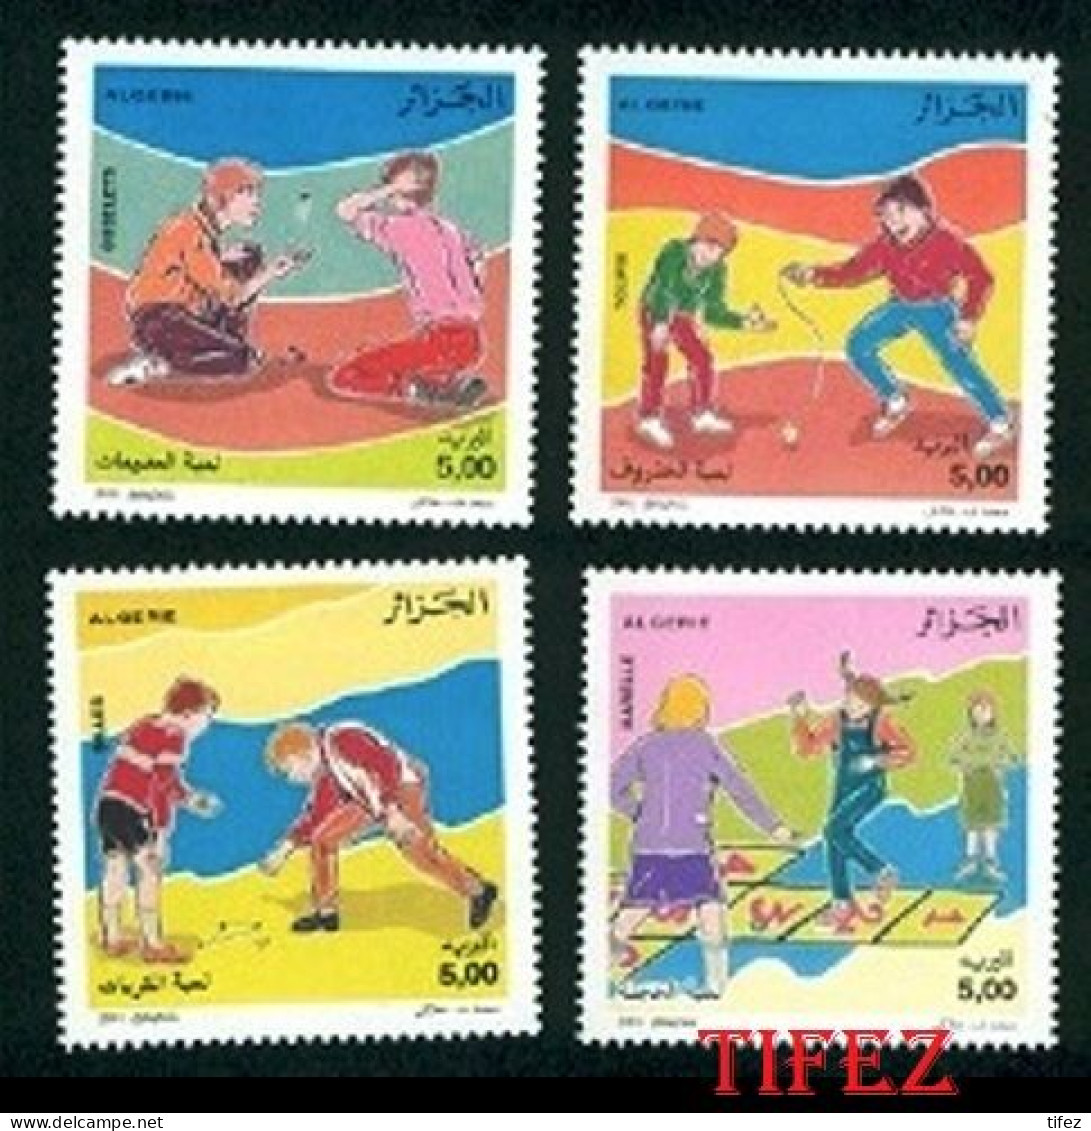 Année 2001-N°1287/1290 Neufs**MNH : Jeux D'Enfants - Série Complète (4 Valeurs) - Algérie (1962-...)